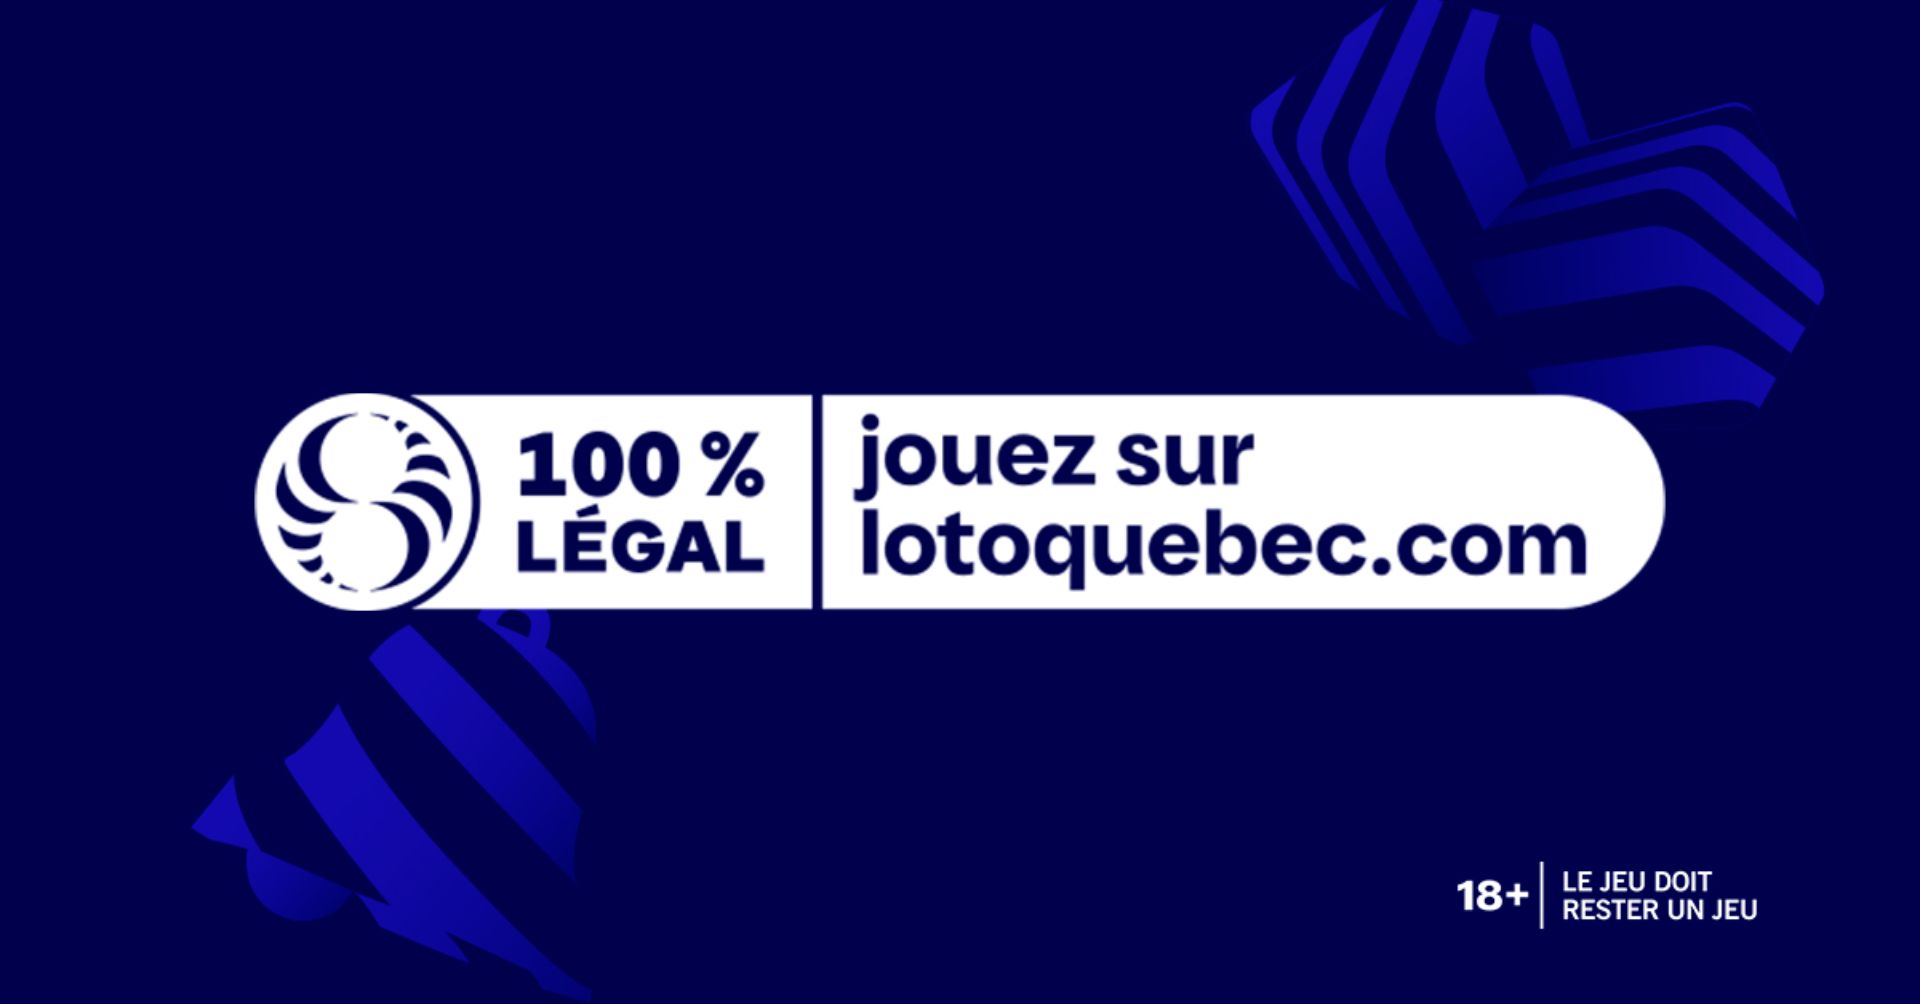 (c) Lotoquebec.com